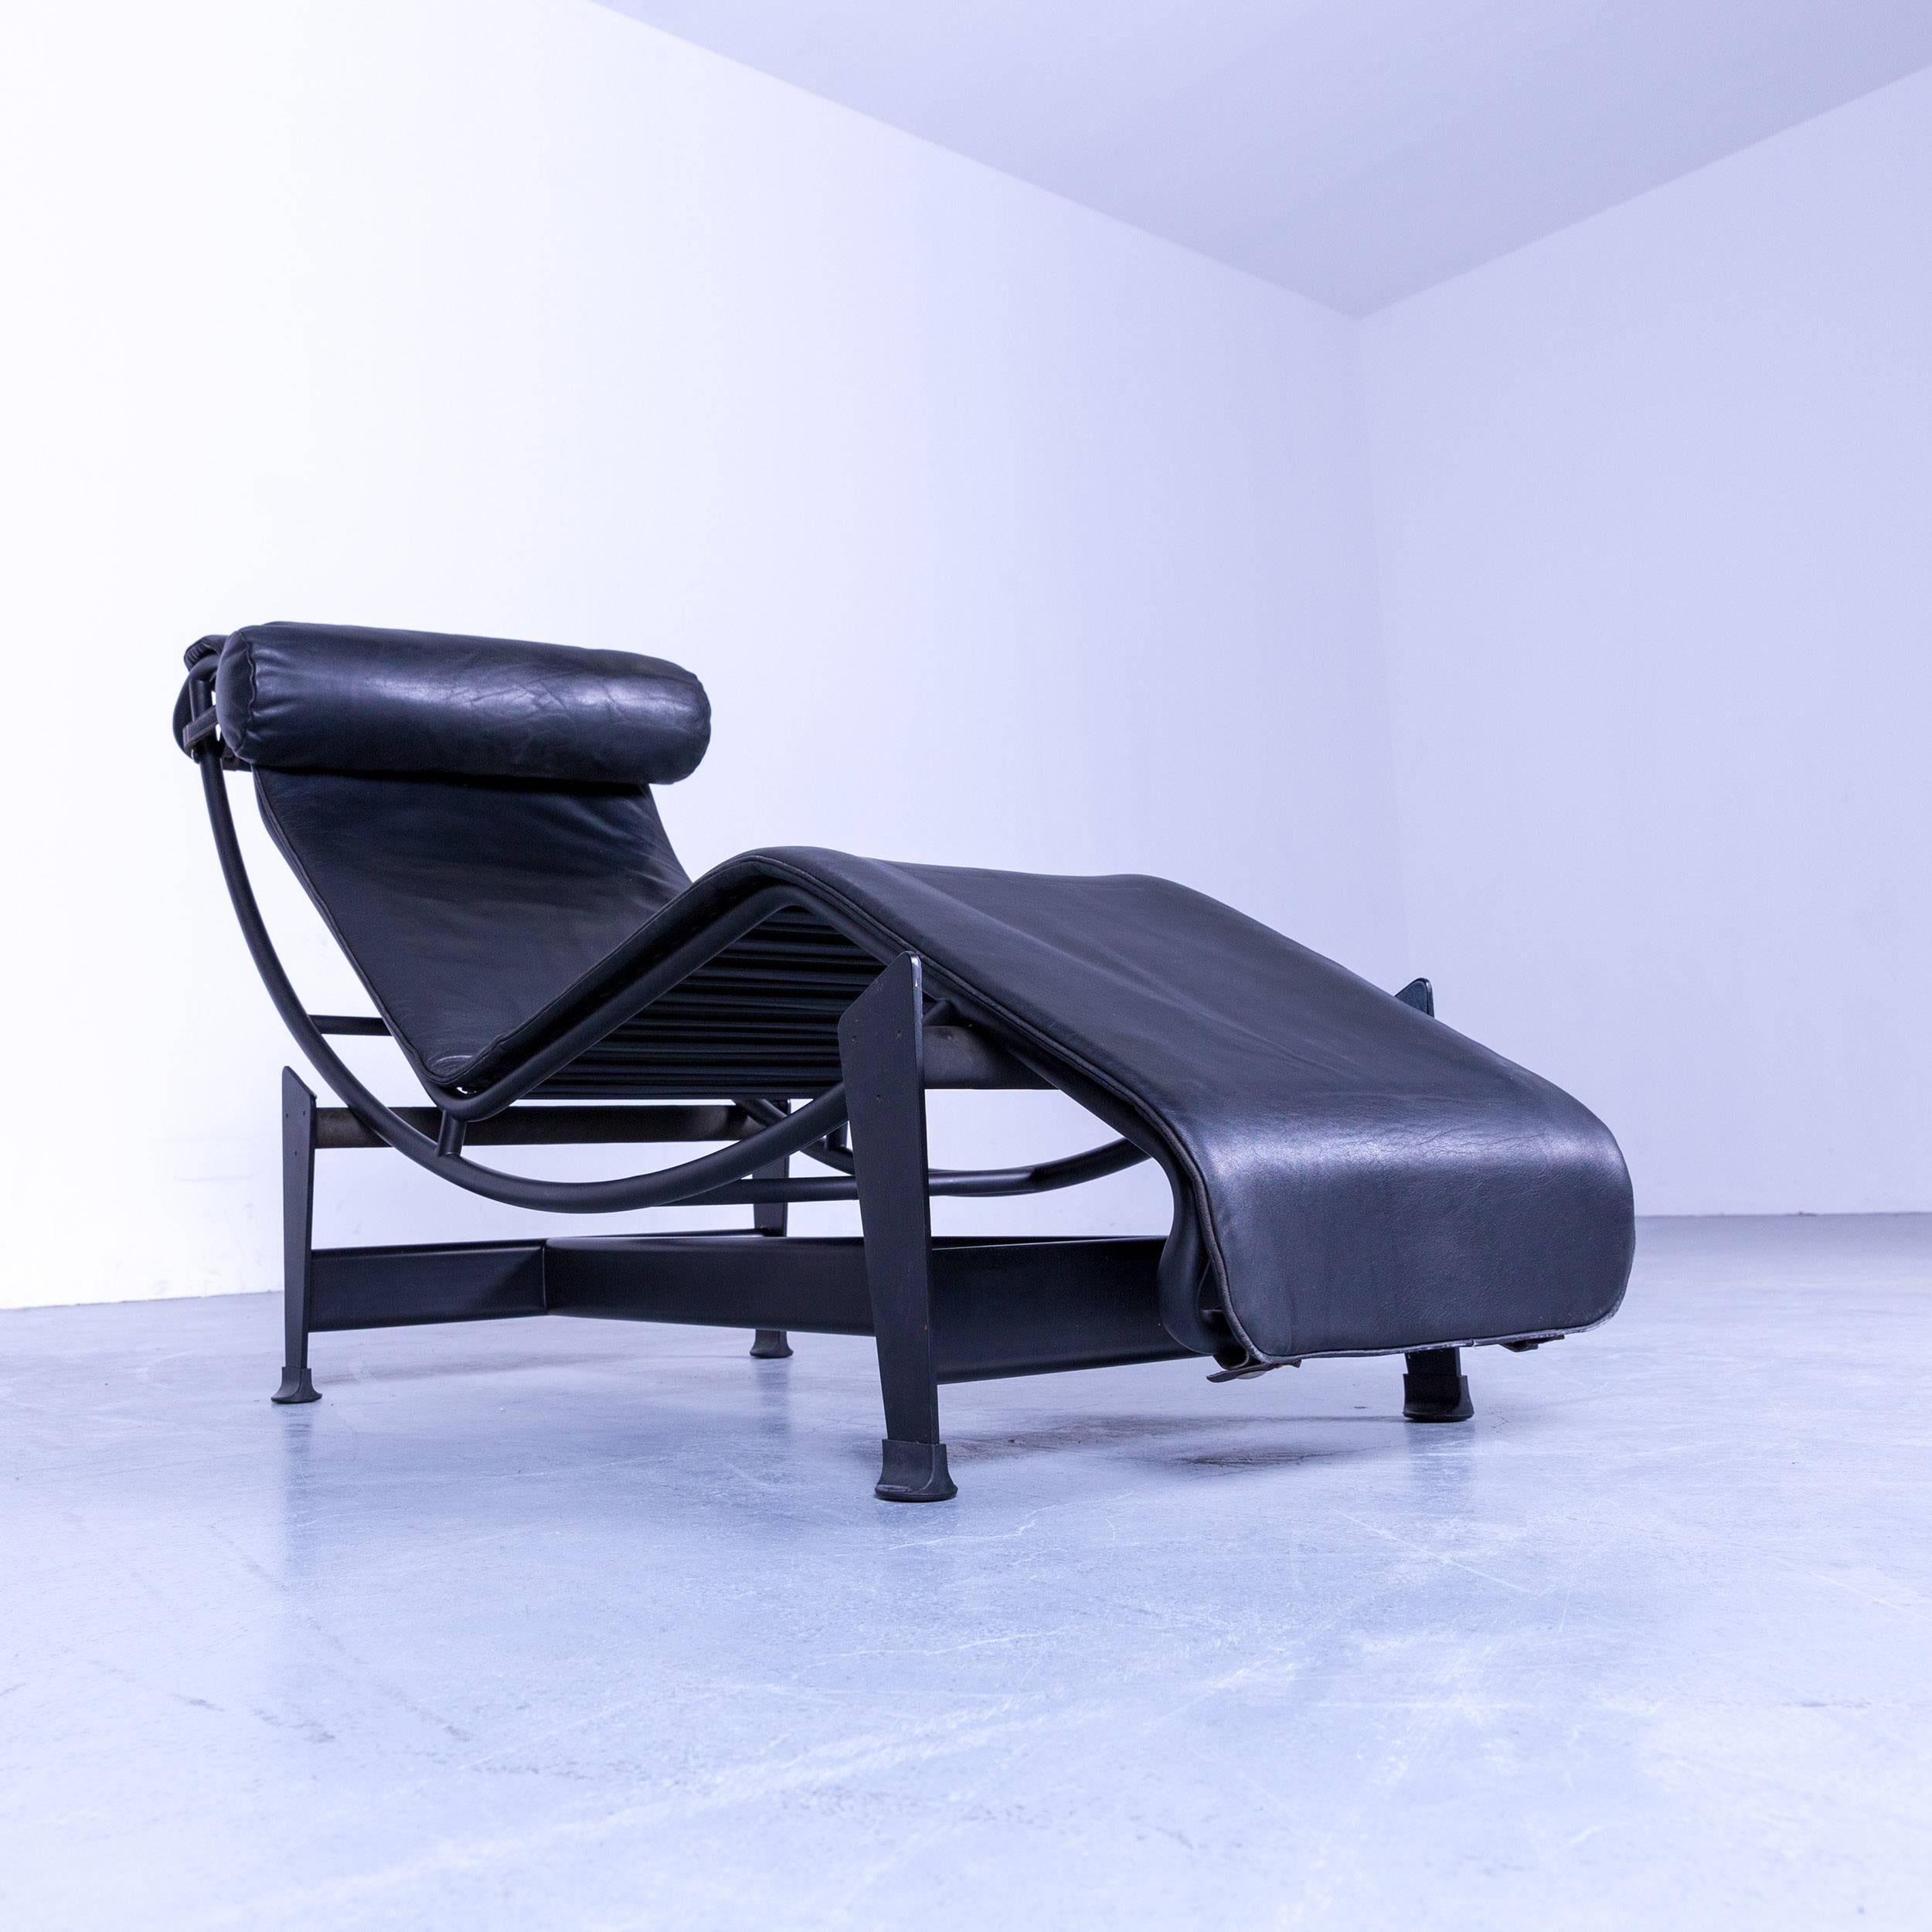 Cassina Le Corbusier LC 4 Chaise Lounge by Le Corbusier, Black Leather Bauhaus 1